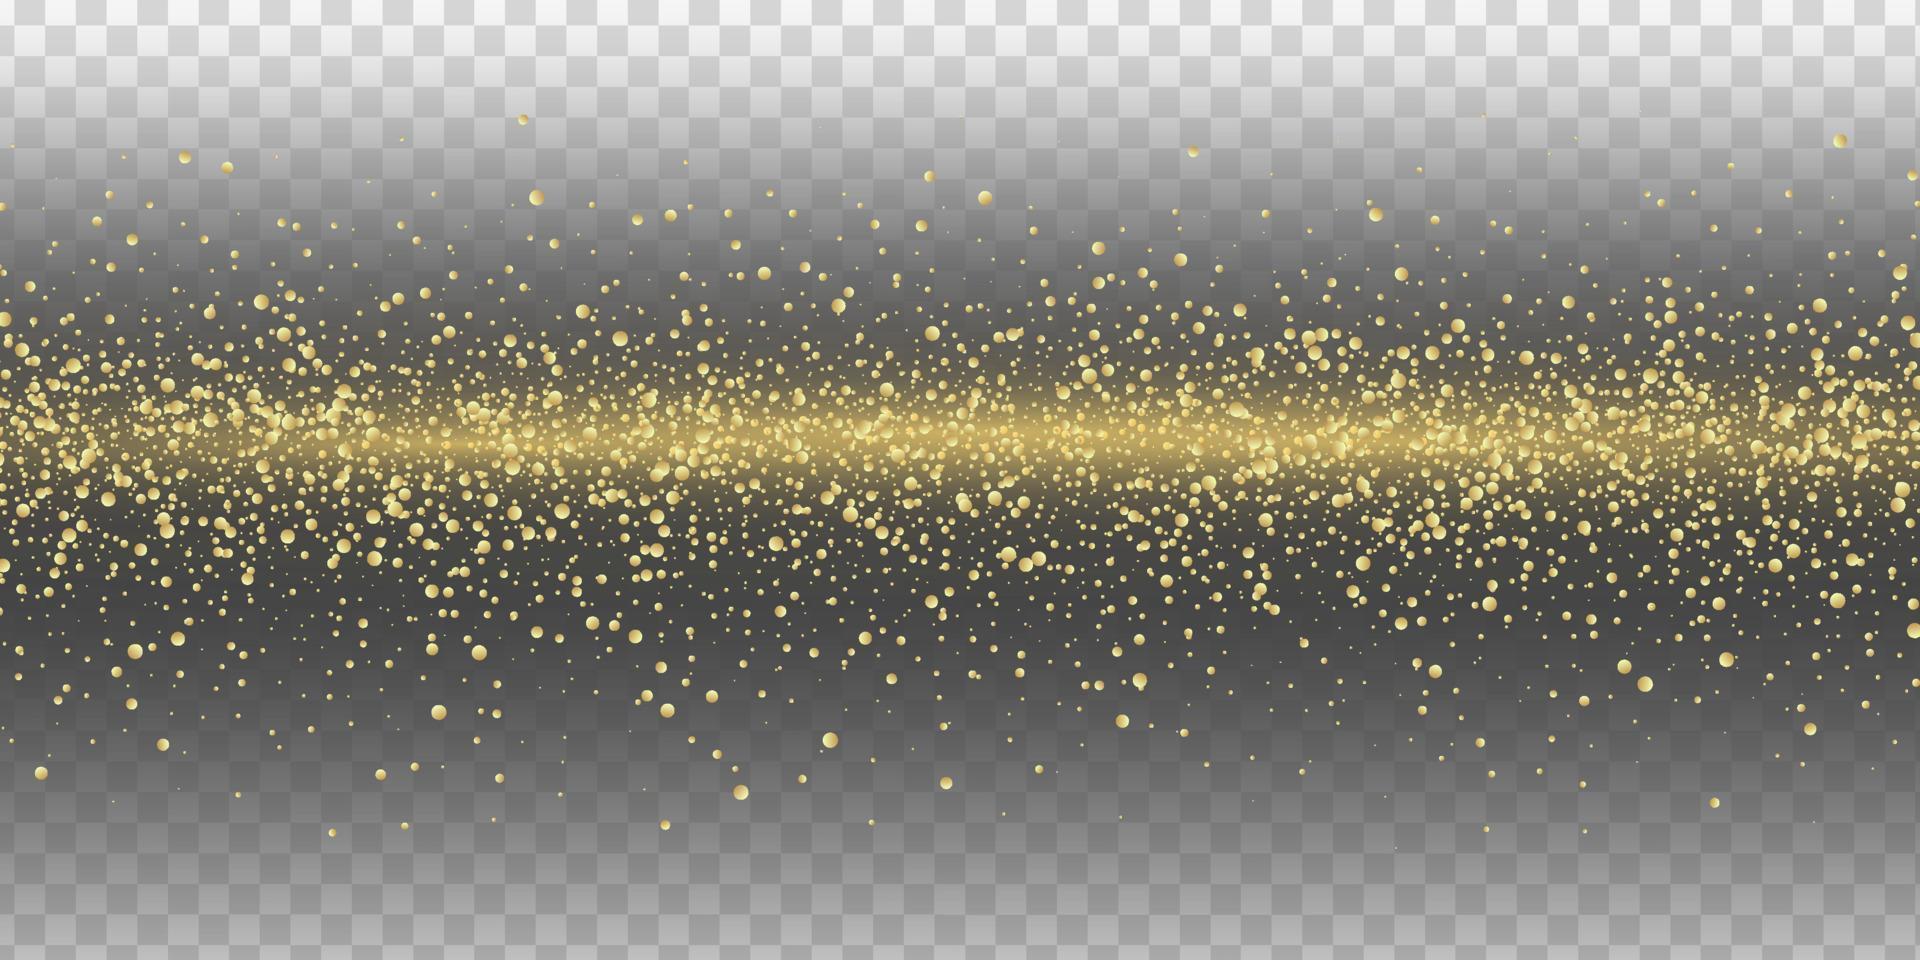 Golden glitter sparks, light effect vector